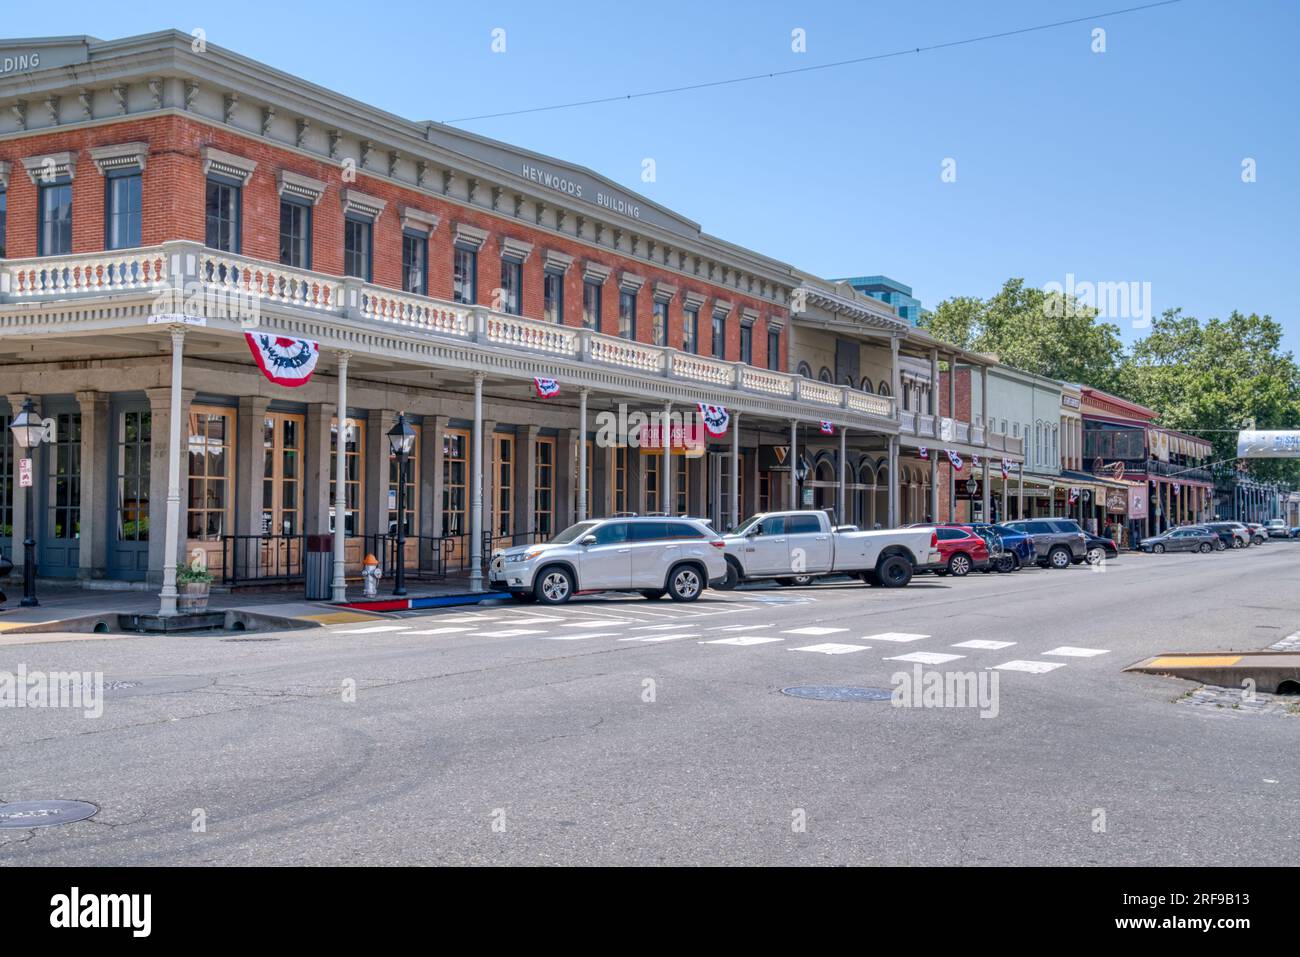 Sacramento, CA - 25 mai 2023 : des bâtiments historiques bordent la rue de la vieille ville de Sacremento située près du front de mer de la ville de Sacremento, Califo Banque D'Images